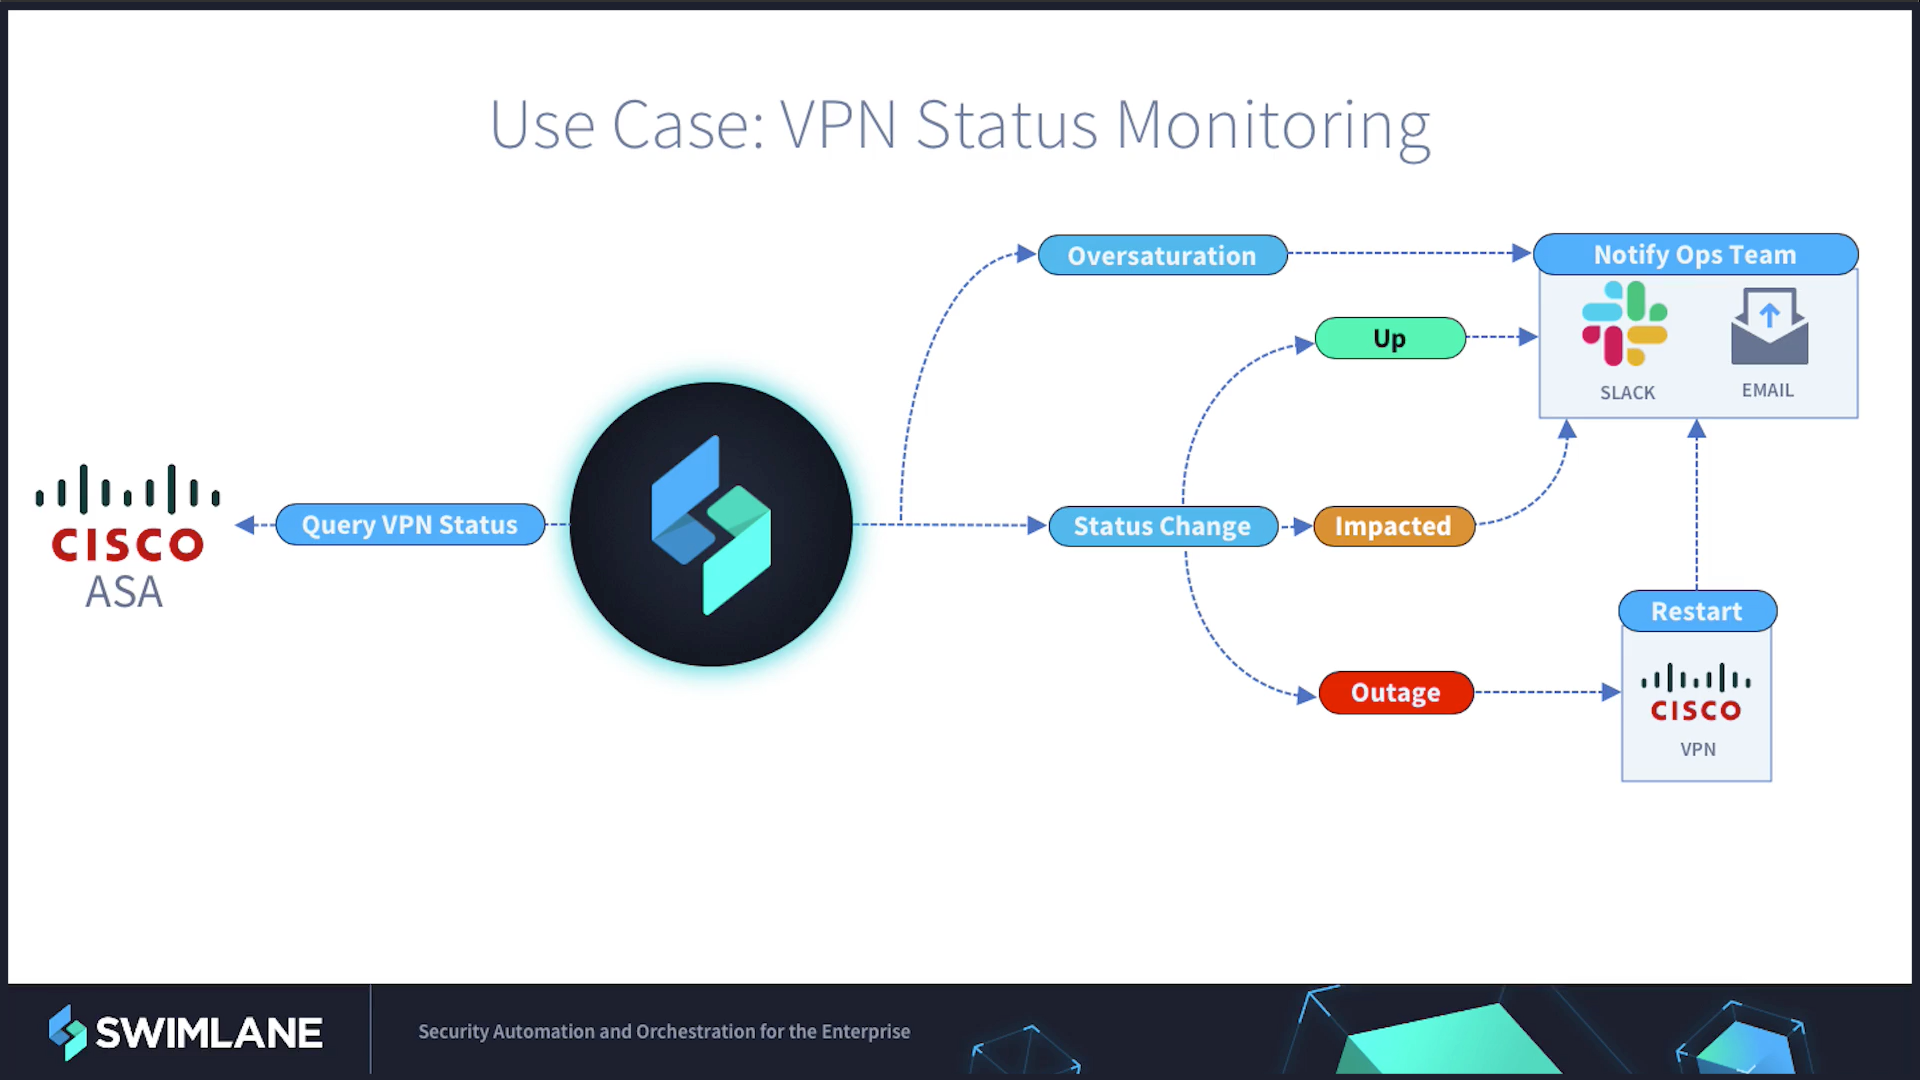 VPN Status Monitoring